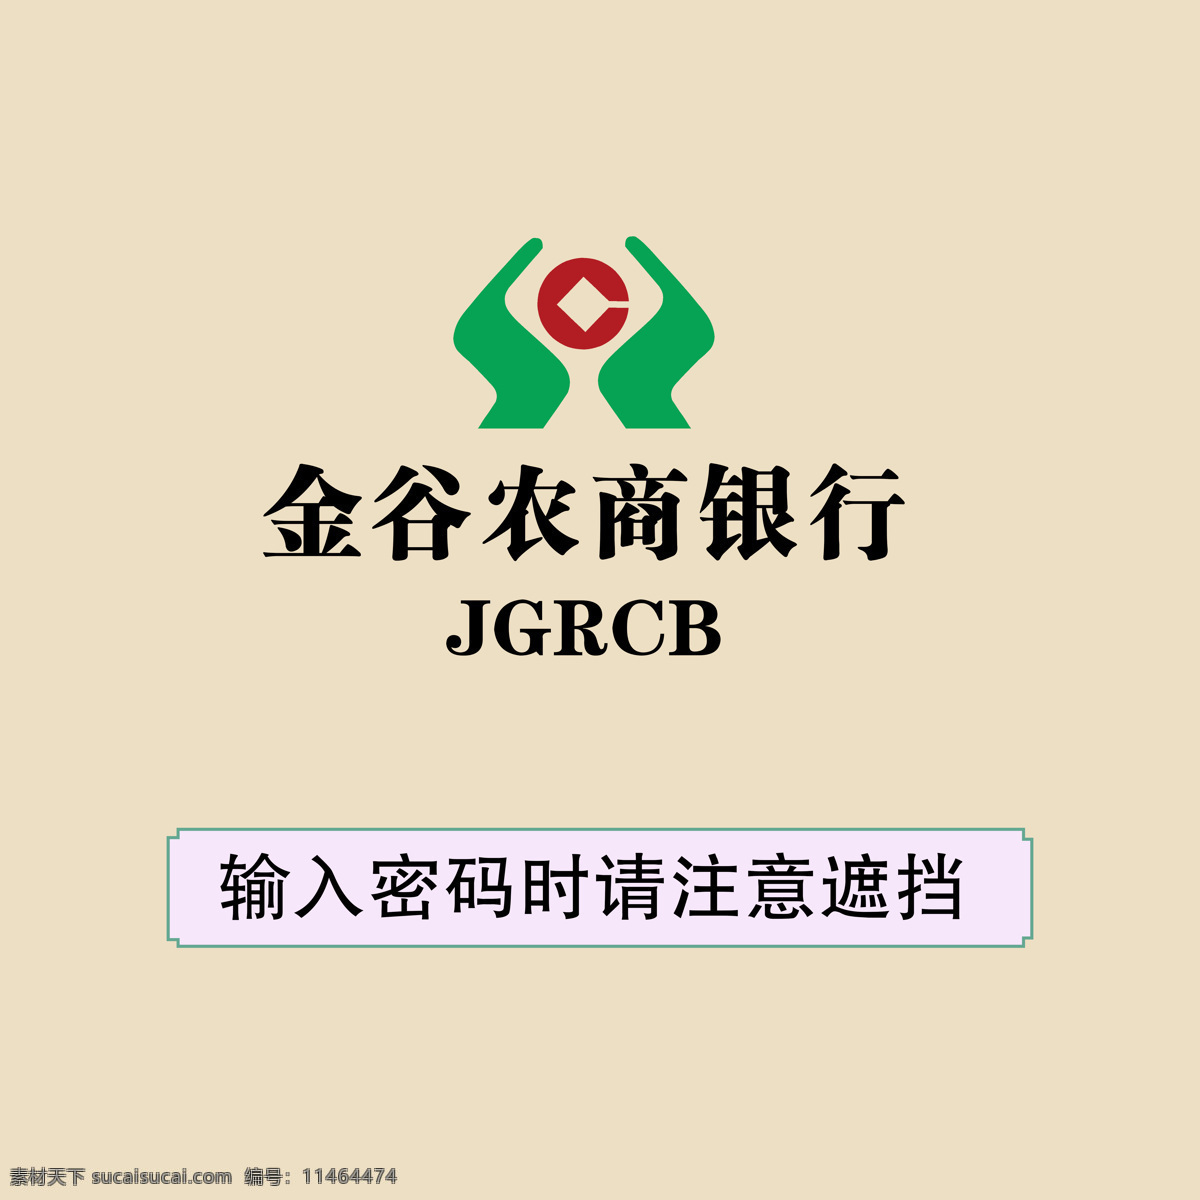 金谷 农商 银行 提示牌 提示 密码 输入 标志图标 公共标识标志